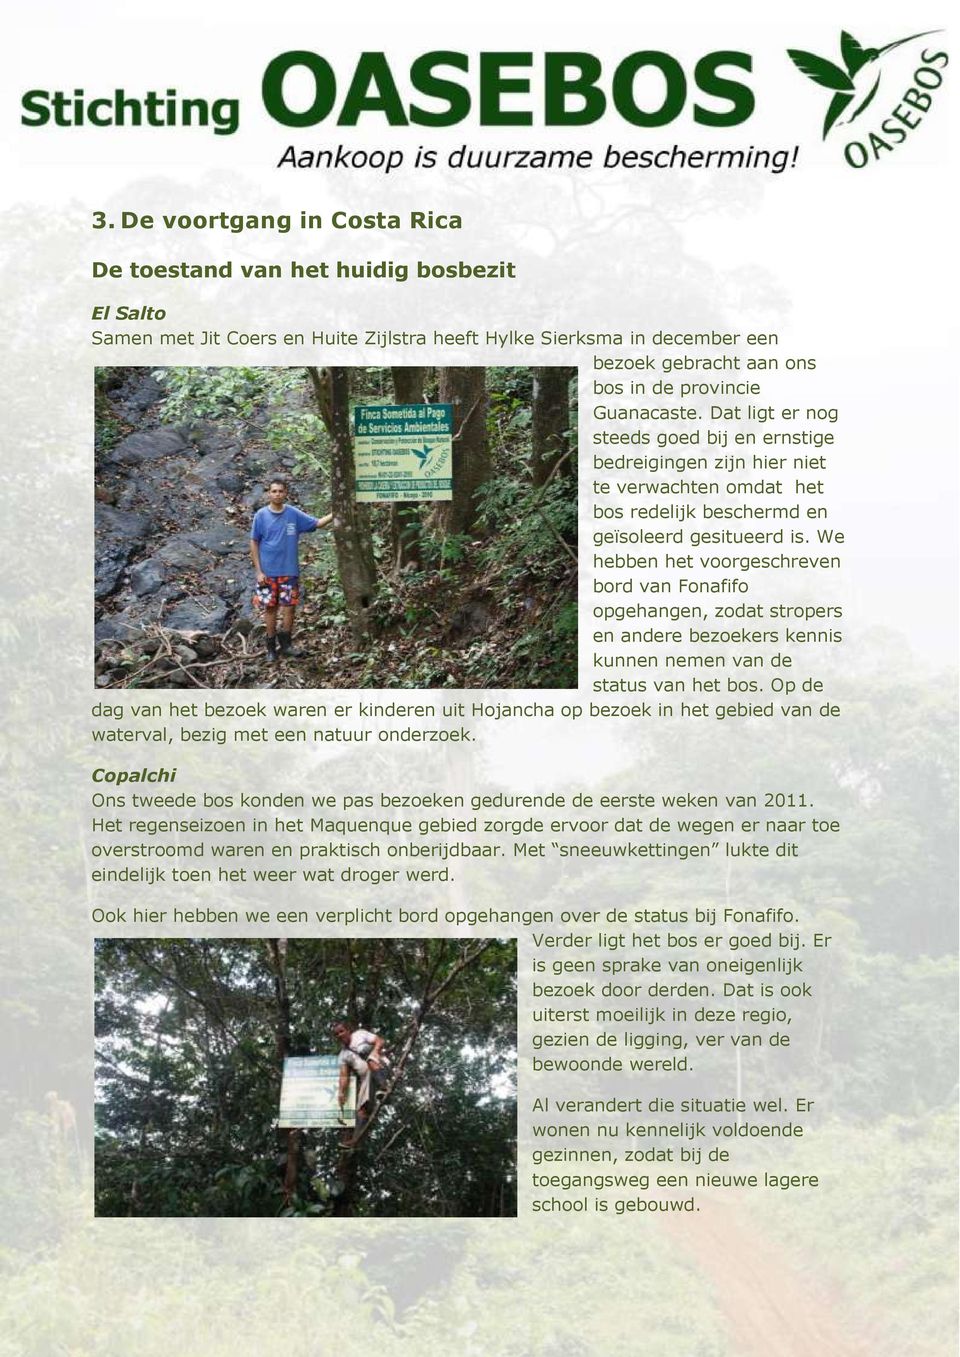 We hebben het voorgeschreven bord van Fonafifo opgehangen, zodat stropers en andere bezoekers kennis kunnen nemen van de status van het bos.